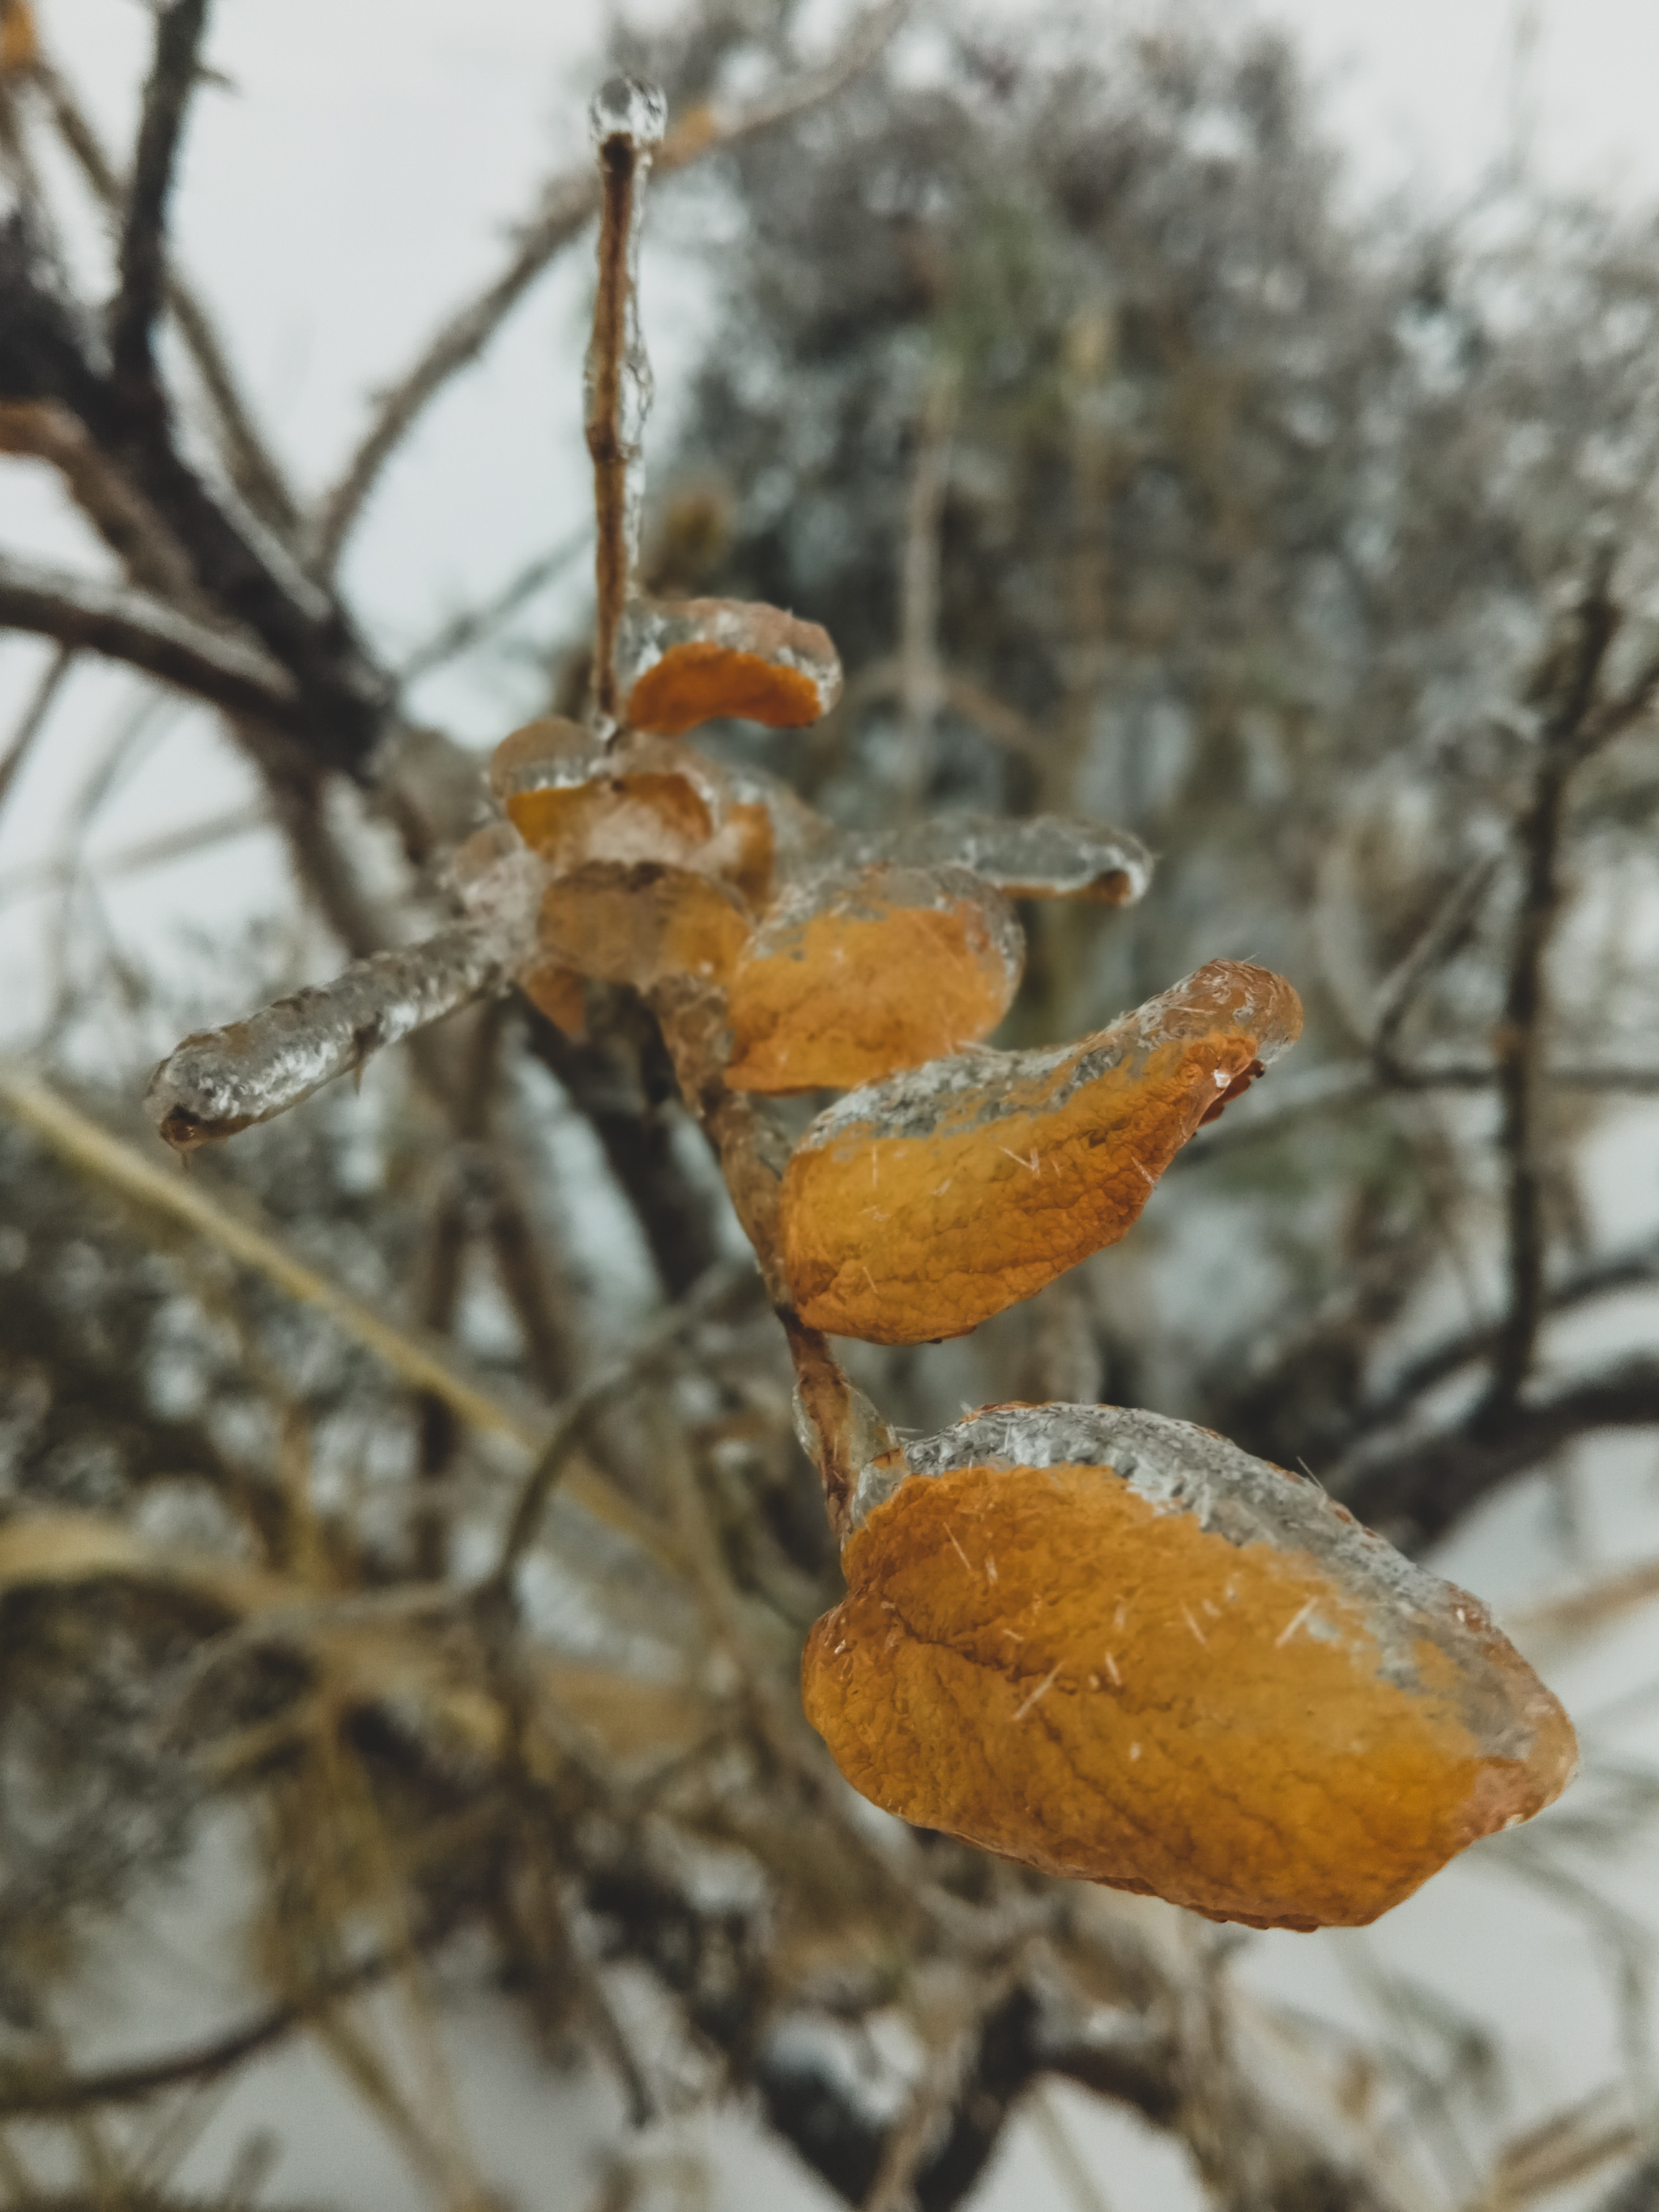 In ice captivity - My, Ice, Freezing rain, Nature, Mobile photography, Longpost